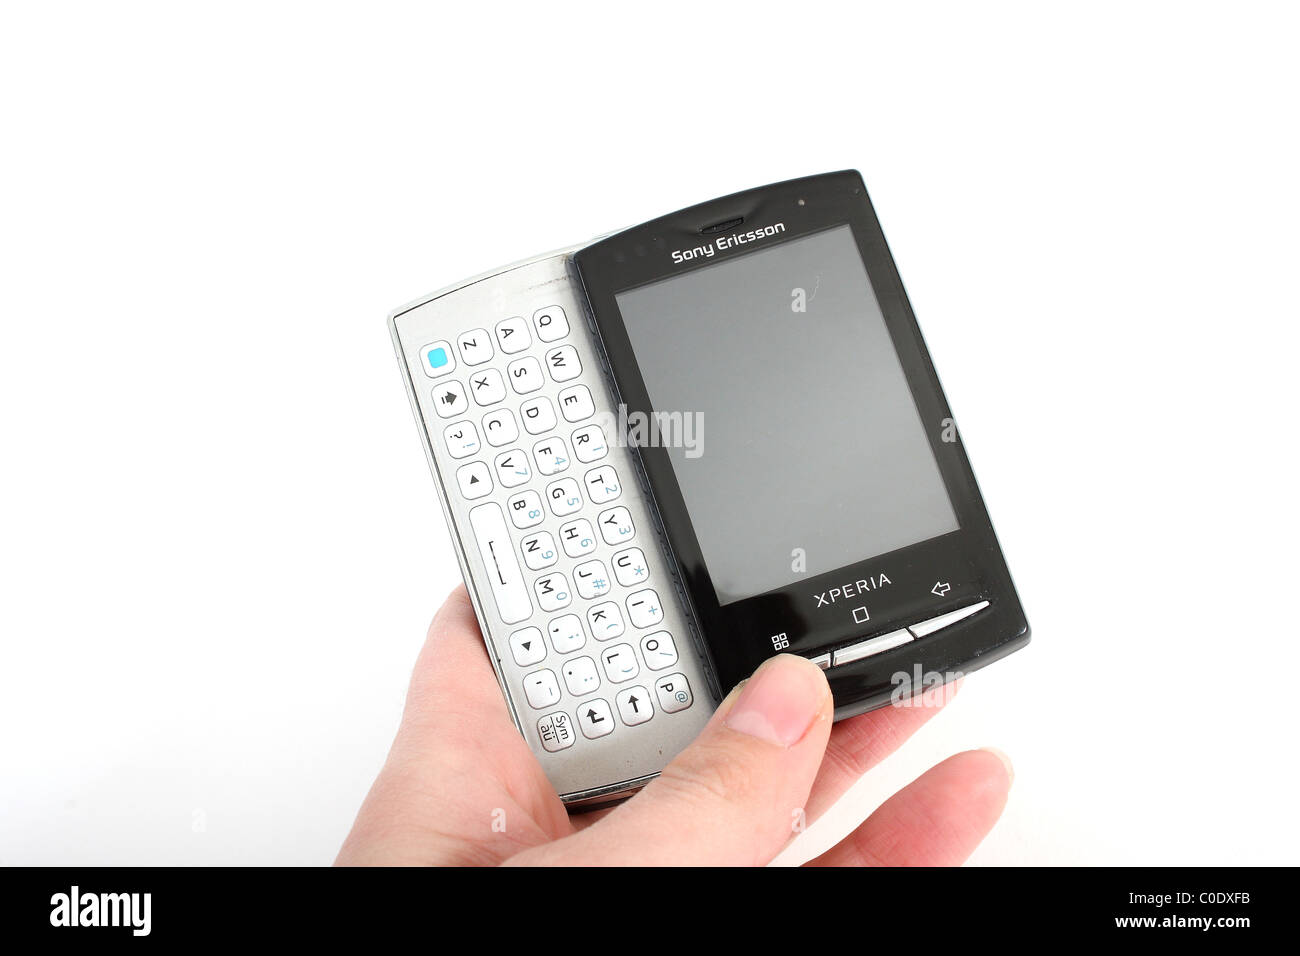 El nuevo Xperia X10 Mini Pro teléfono móvil de Sony Ericsson. Un teléfono  para el negocio o el placer, con un teclado Qwerty extraíble Fotografía de  stock - Alamy